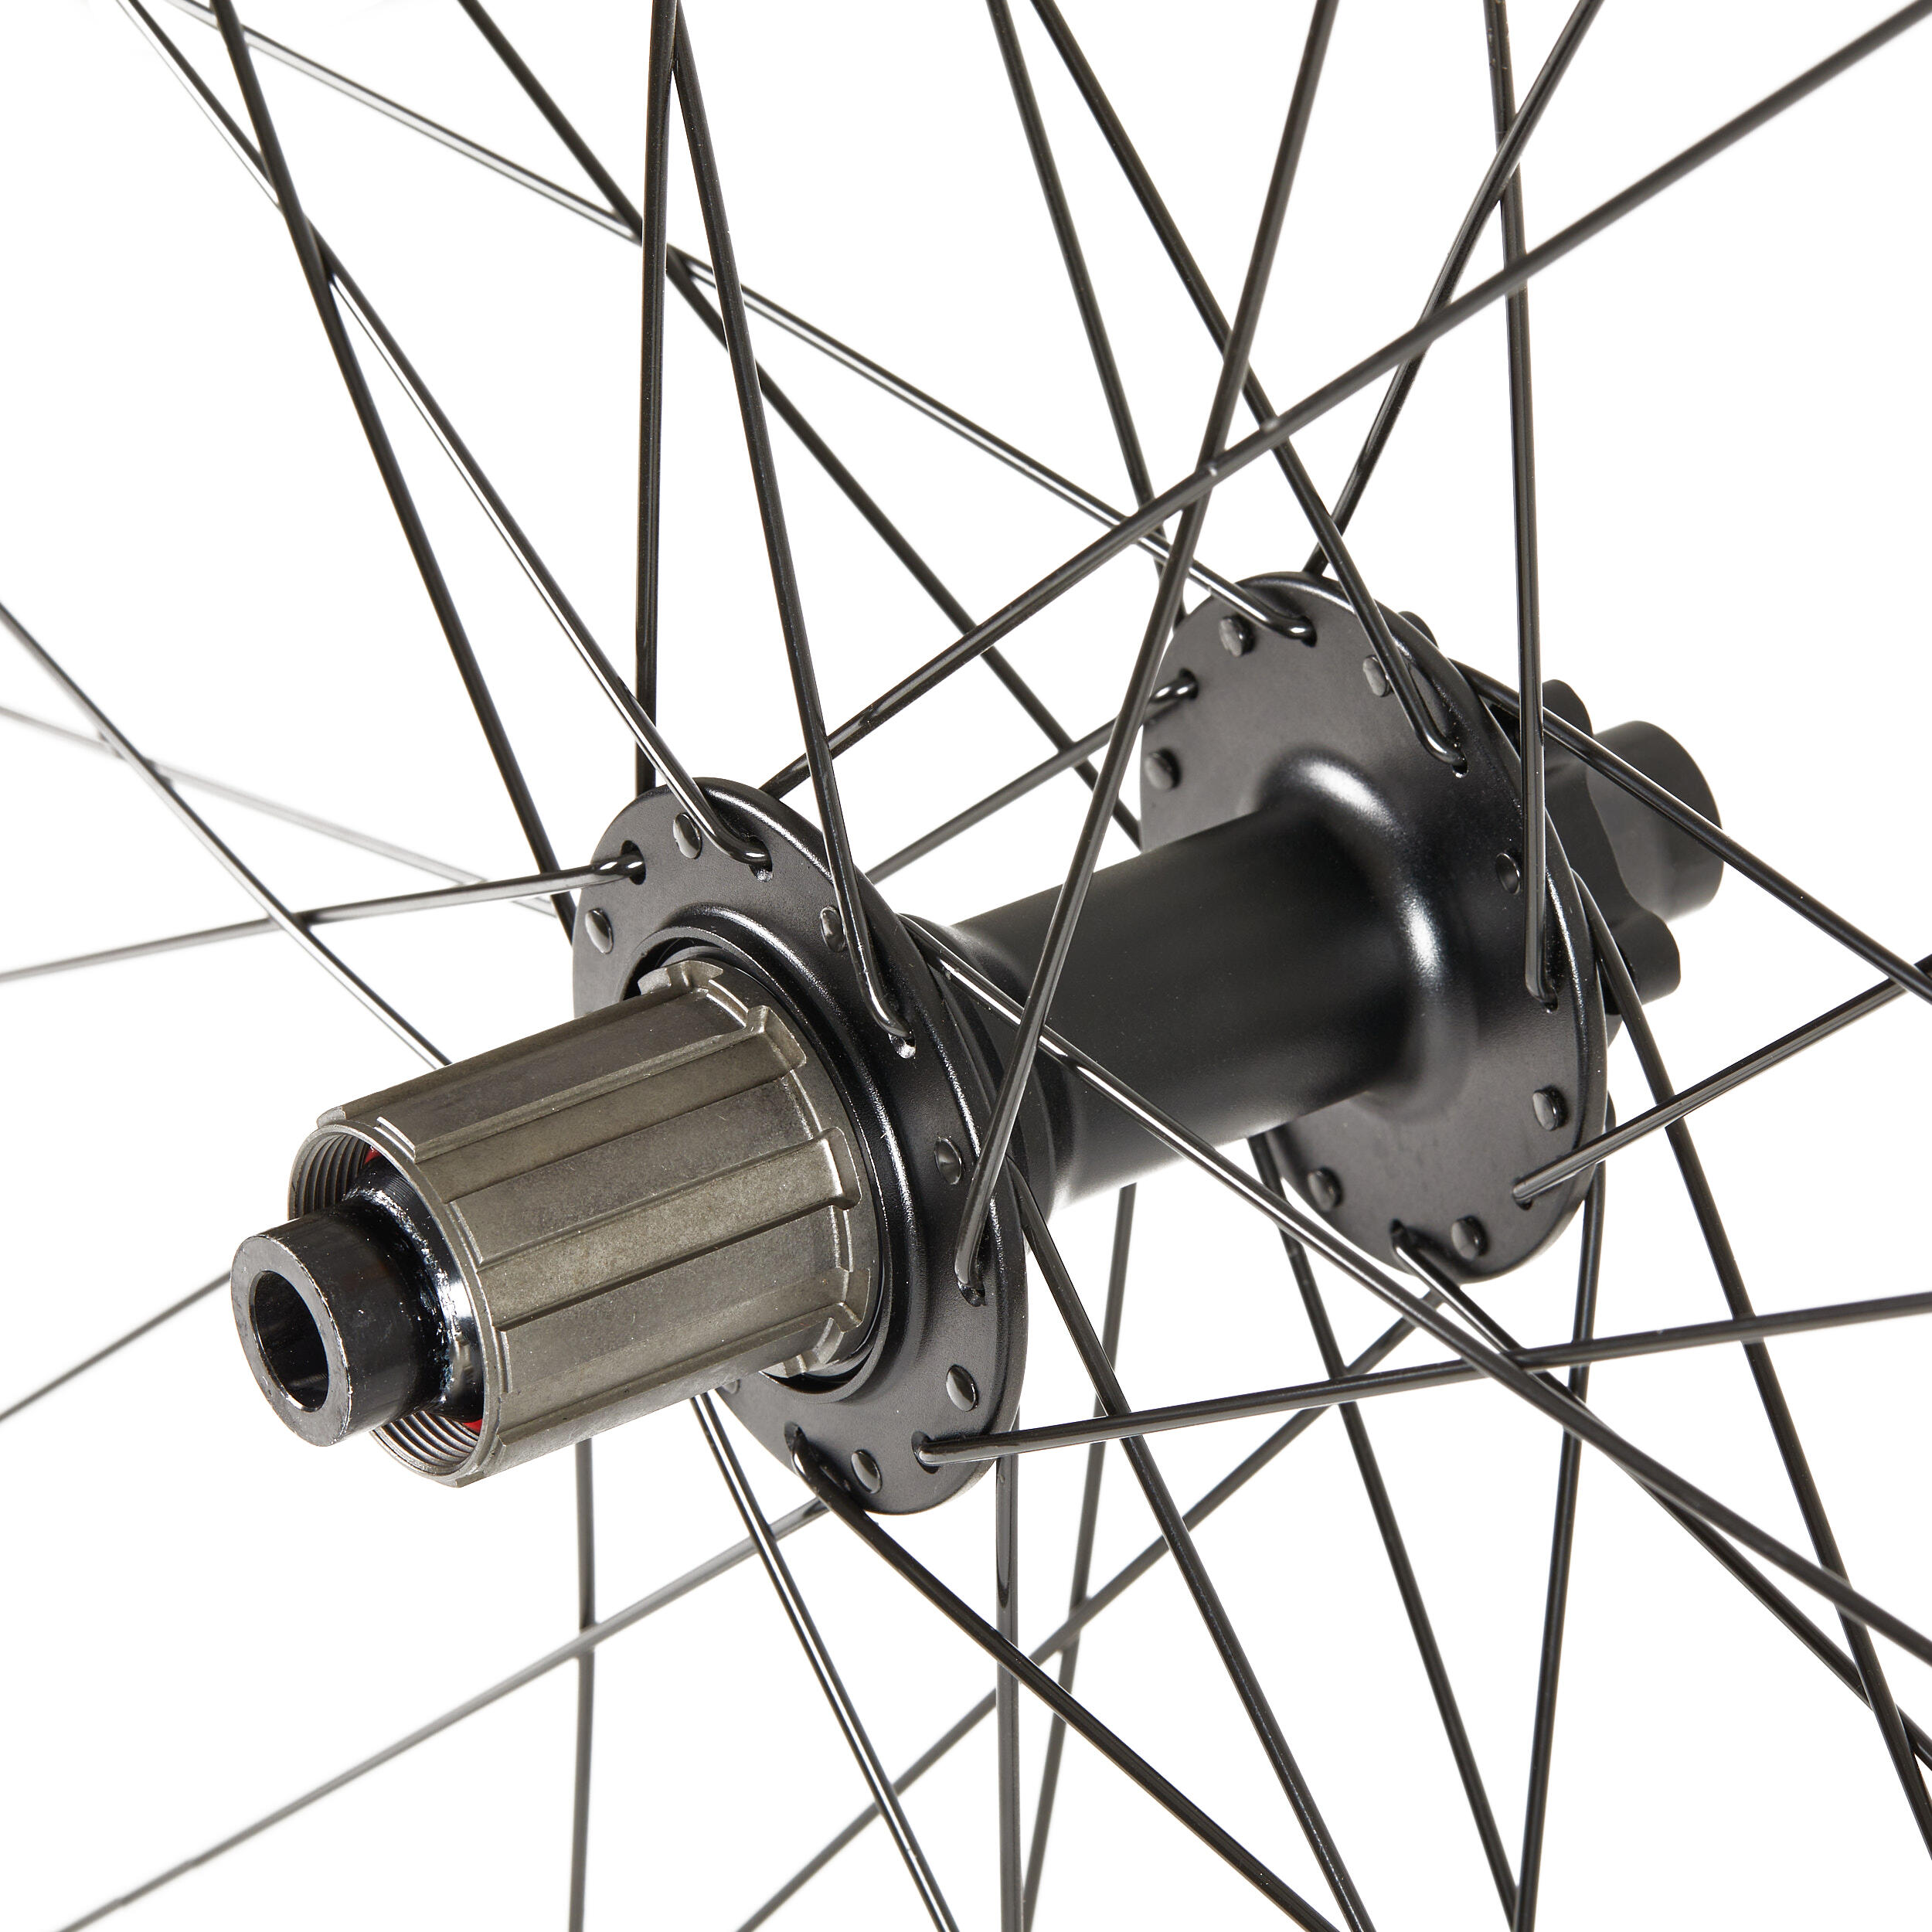 29" Double-Walled 12x148 Boost Disc Mountain Bike Rear Wheel 2/3